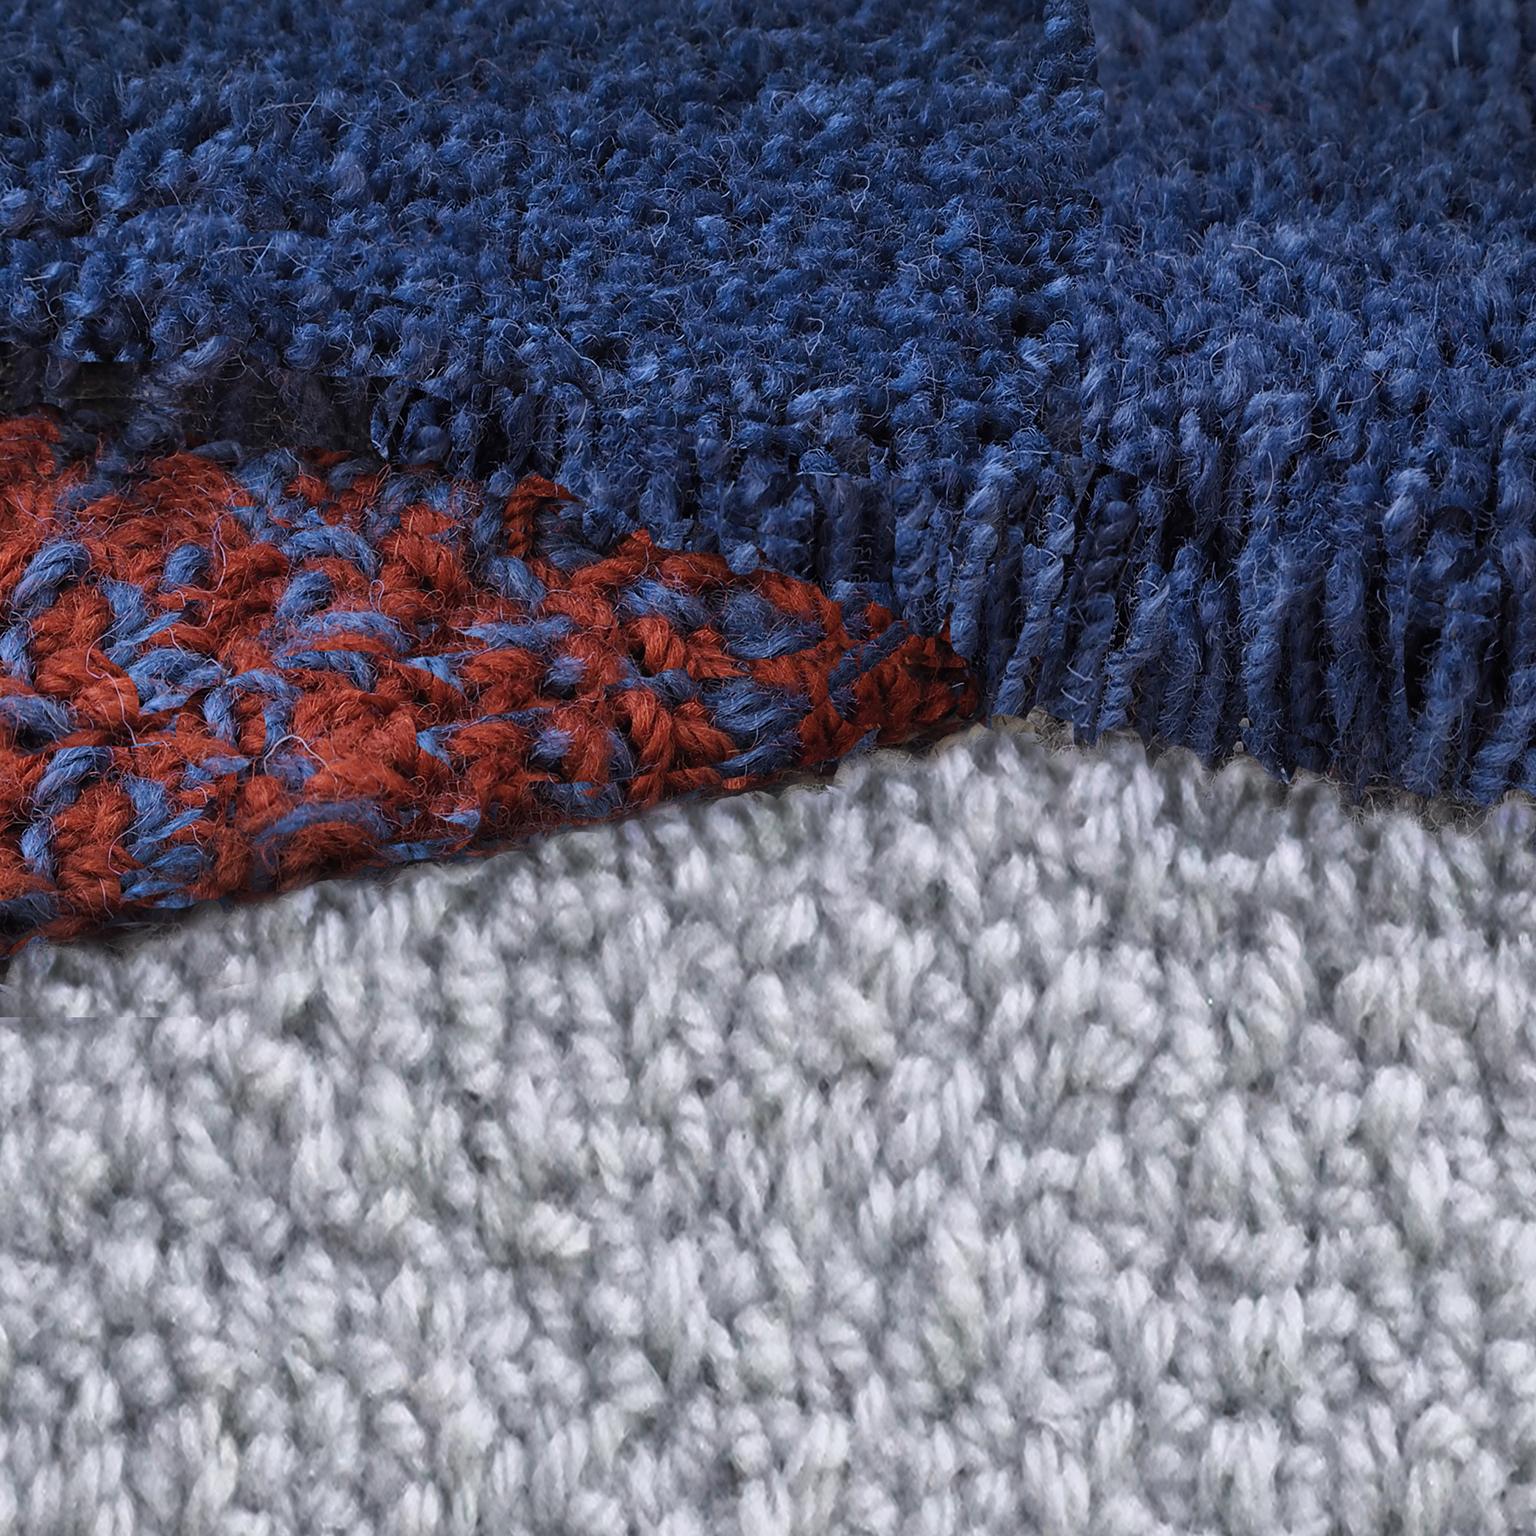 teppich aus 100% neuseeländischer Wolle
Entworfen von Seraina Lareida 
Hergestellt in Italien

Oci Left ist eine der Teppichformen der Linie, die sich leicht an jede Art von Raum anpassen lässt.
Wenn man darauf geht, kann man die